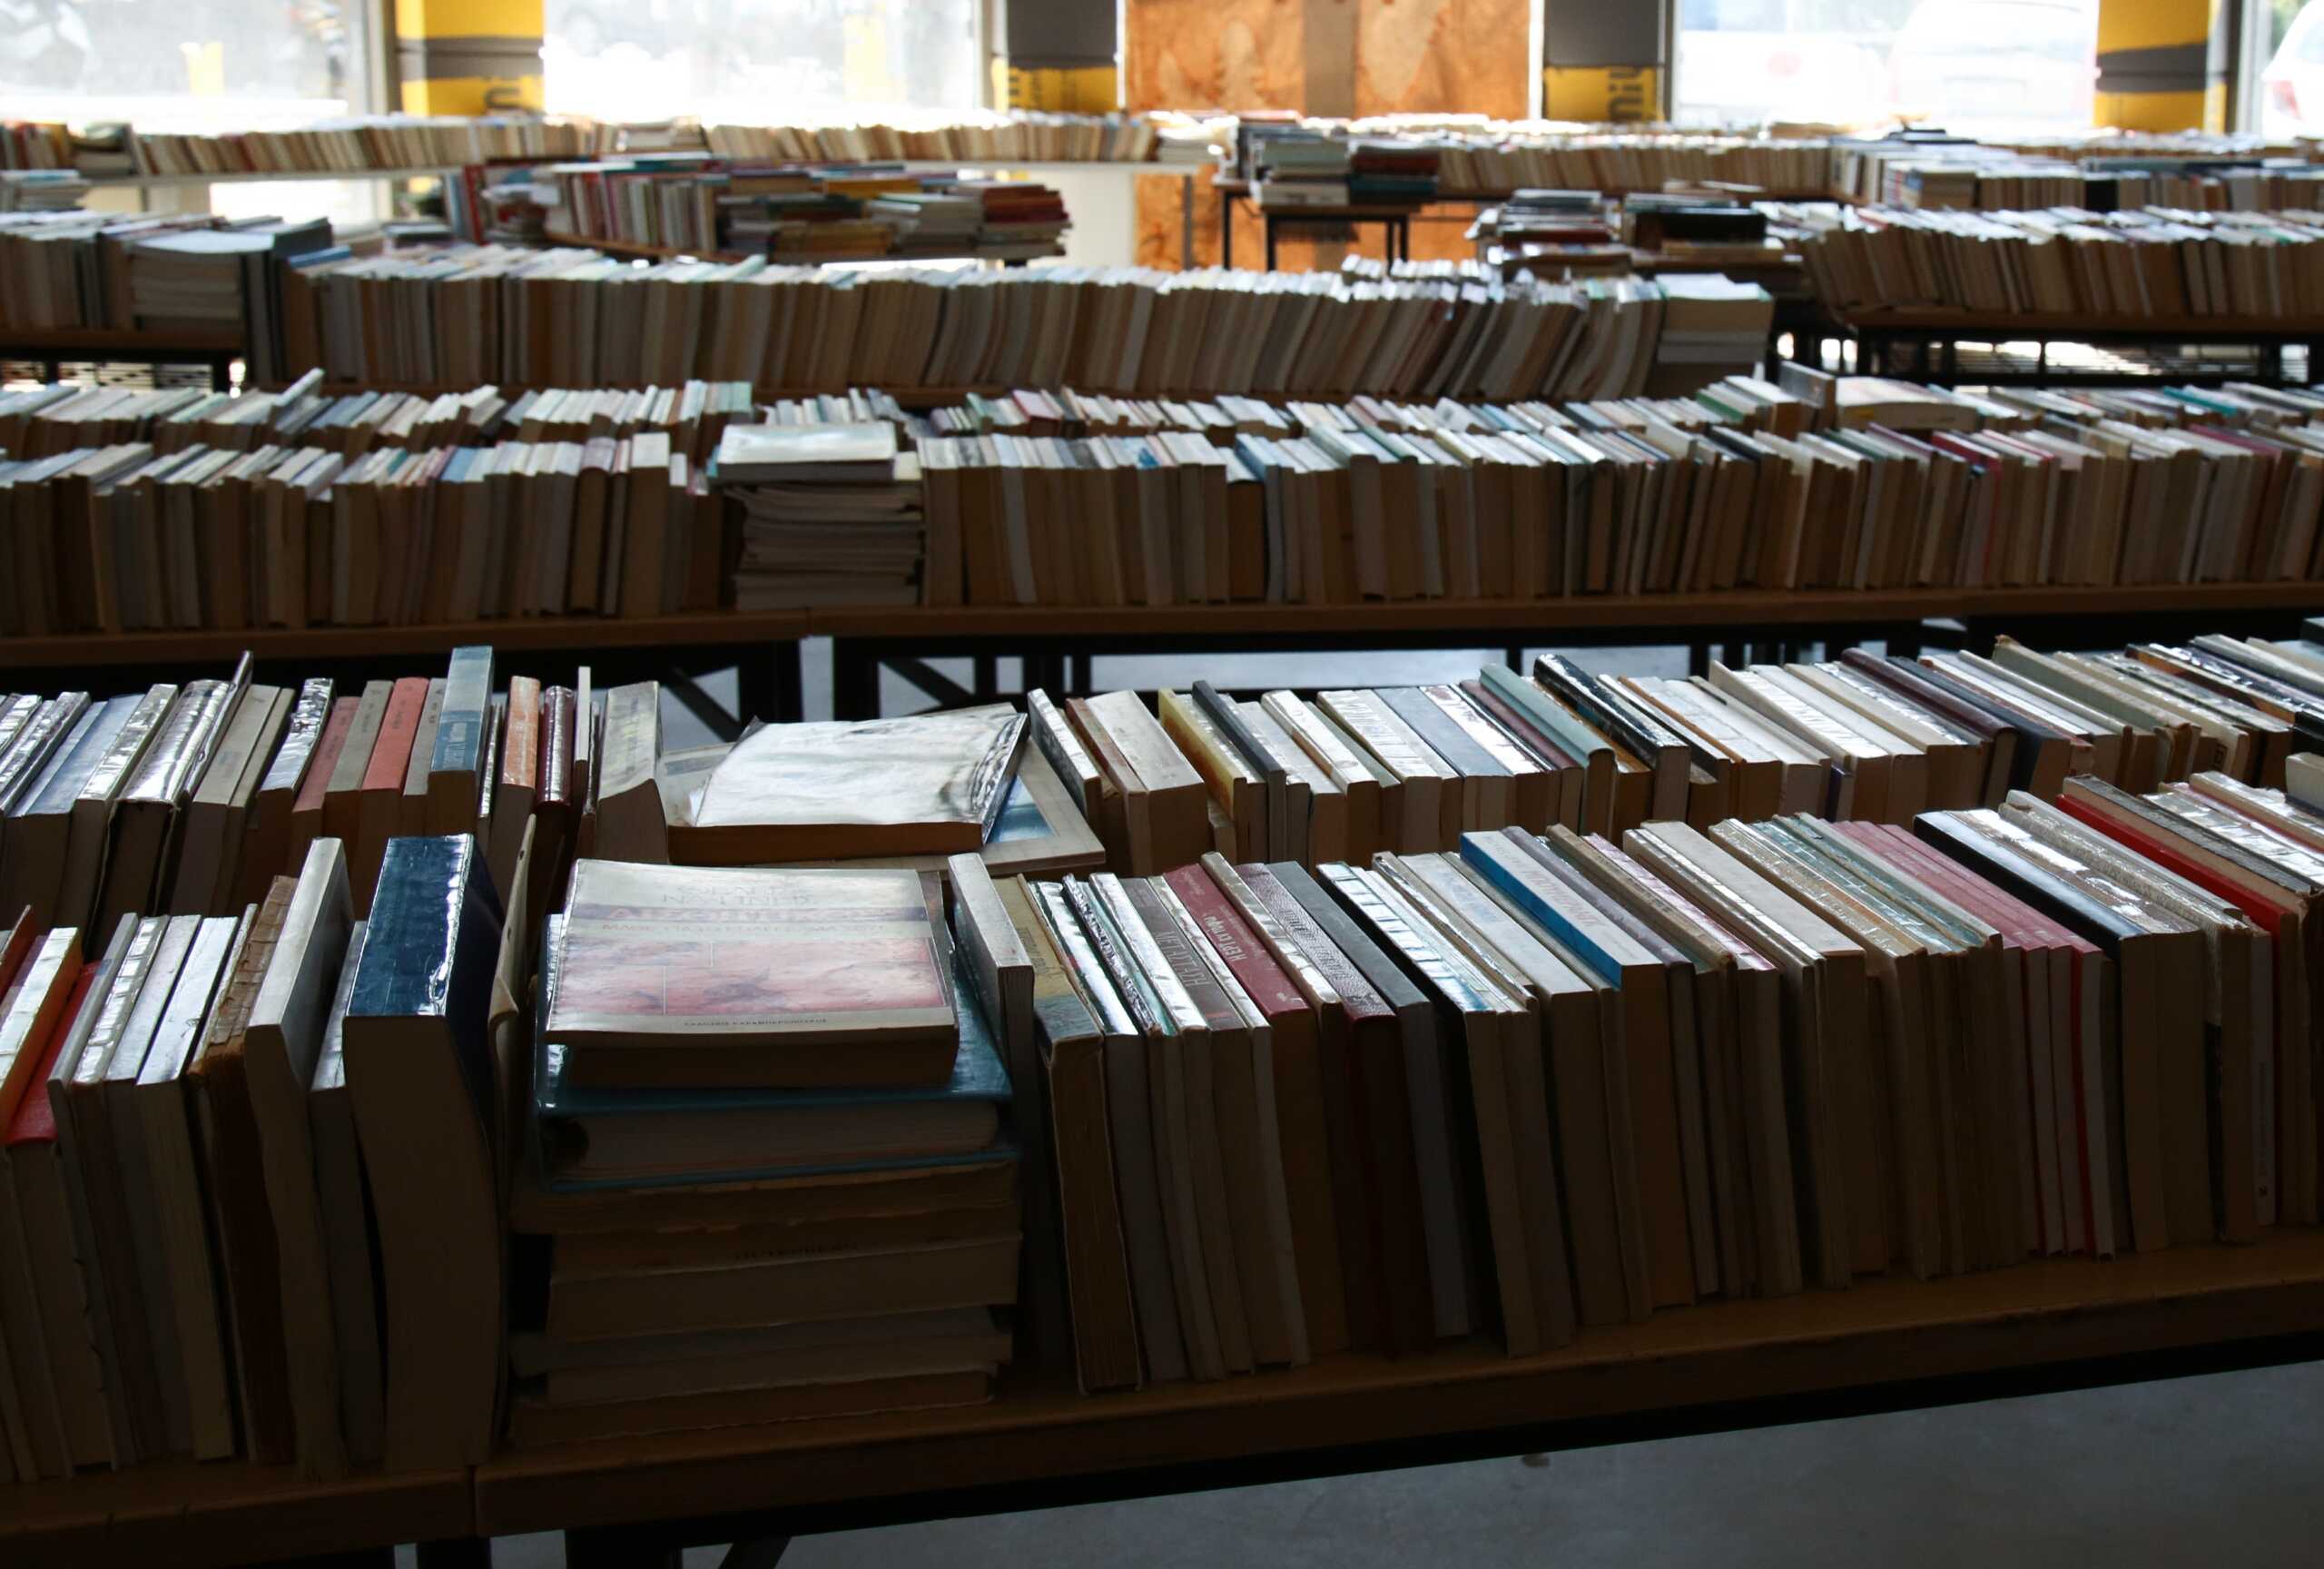 Φινλανδία: Επέστρεψαν βιβλίο σε δανειστική βιβλιοθήκη με καθυστέρηση 84 ετών